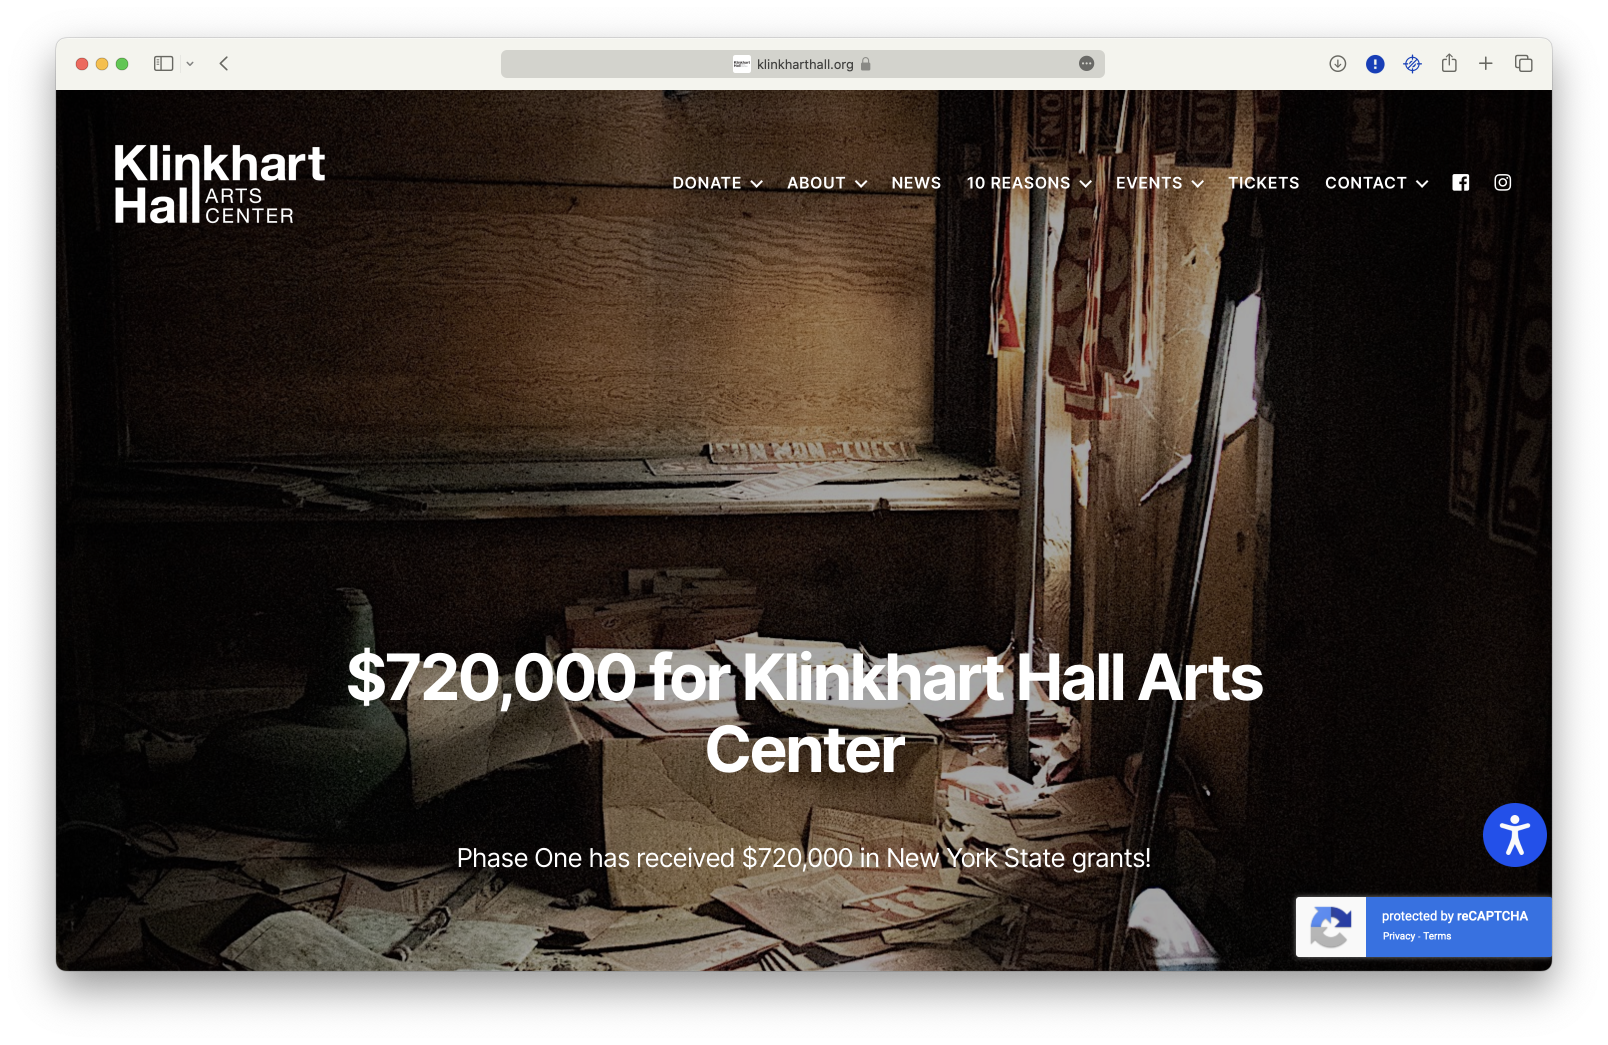 A website for the Klinkhart Hall Art Center